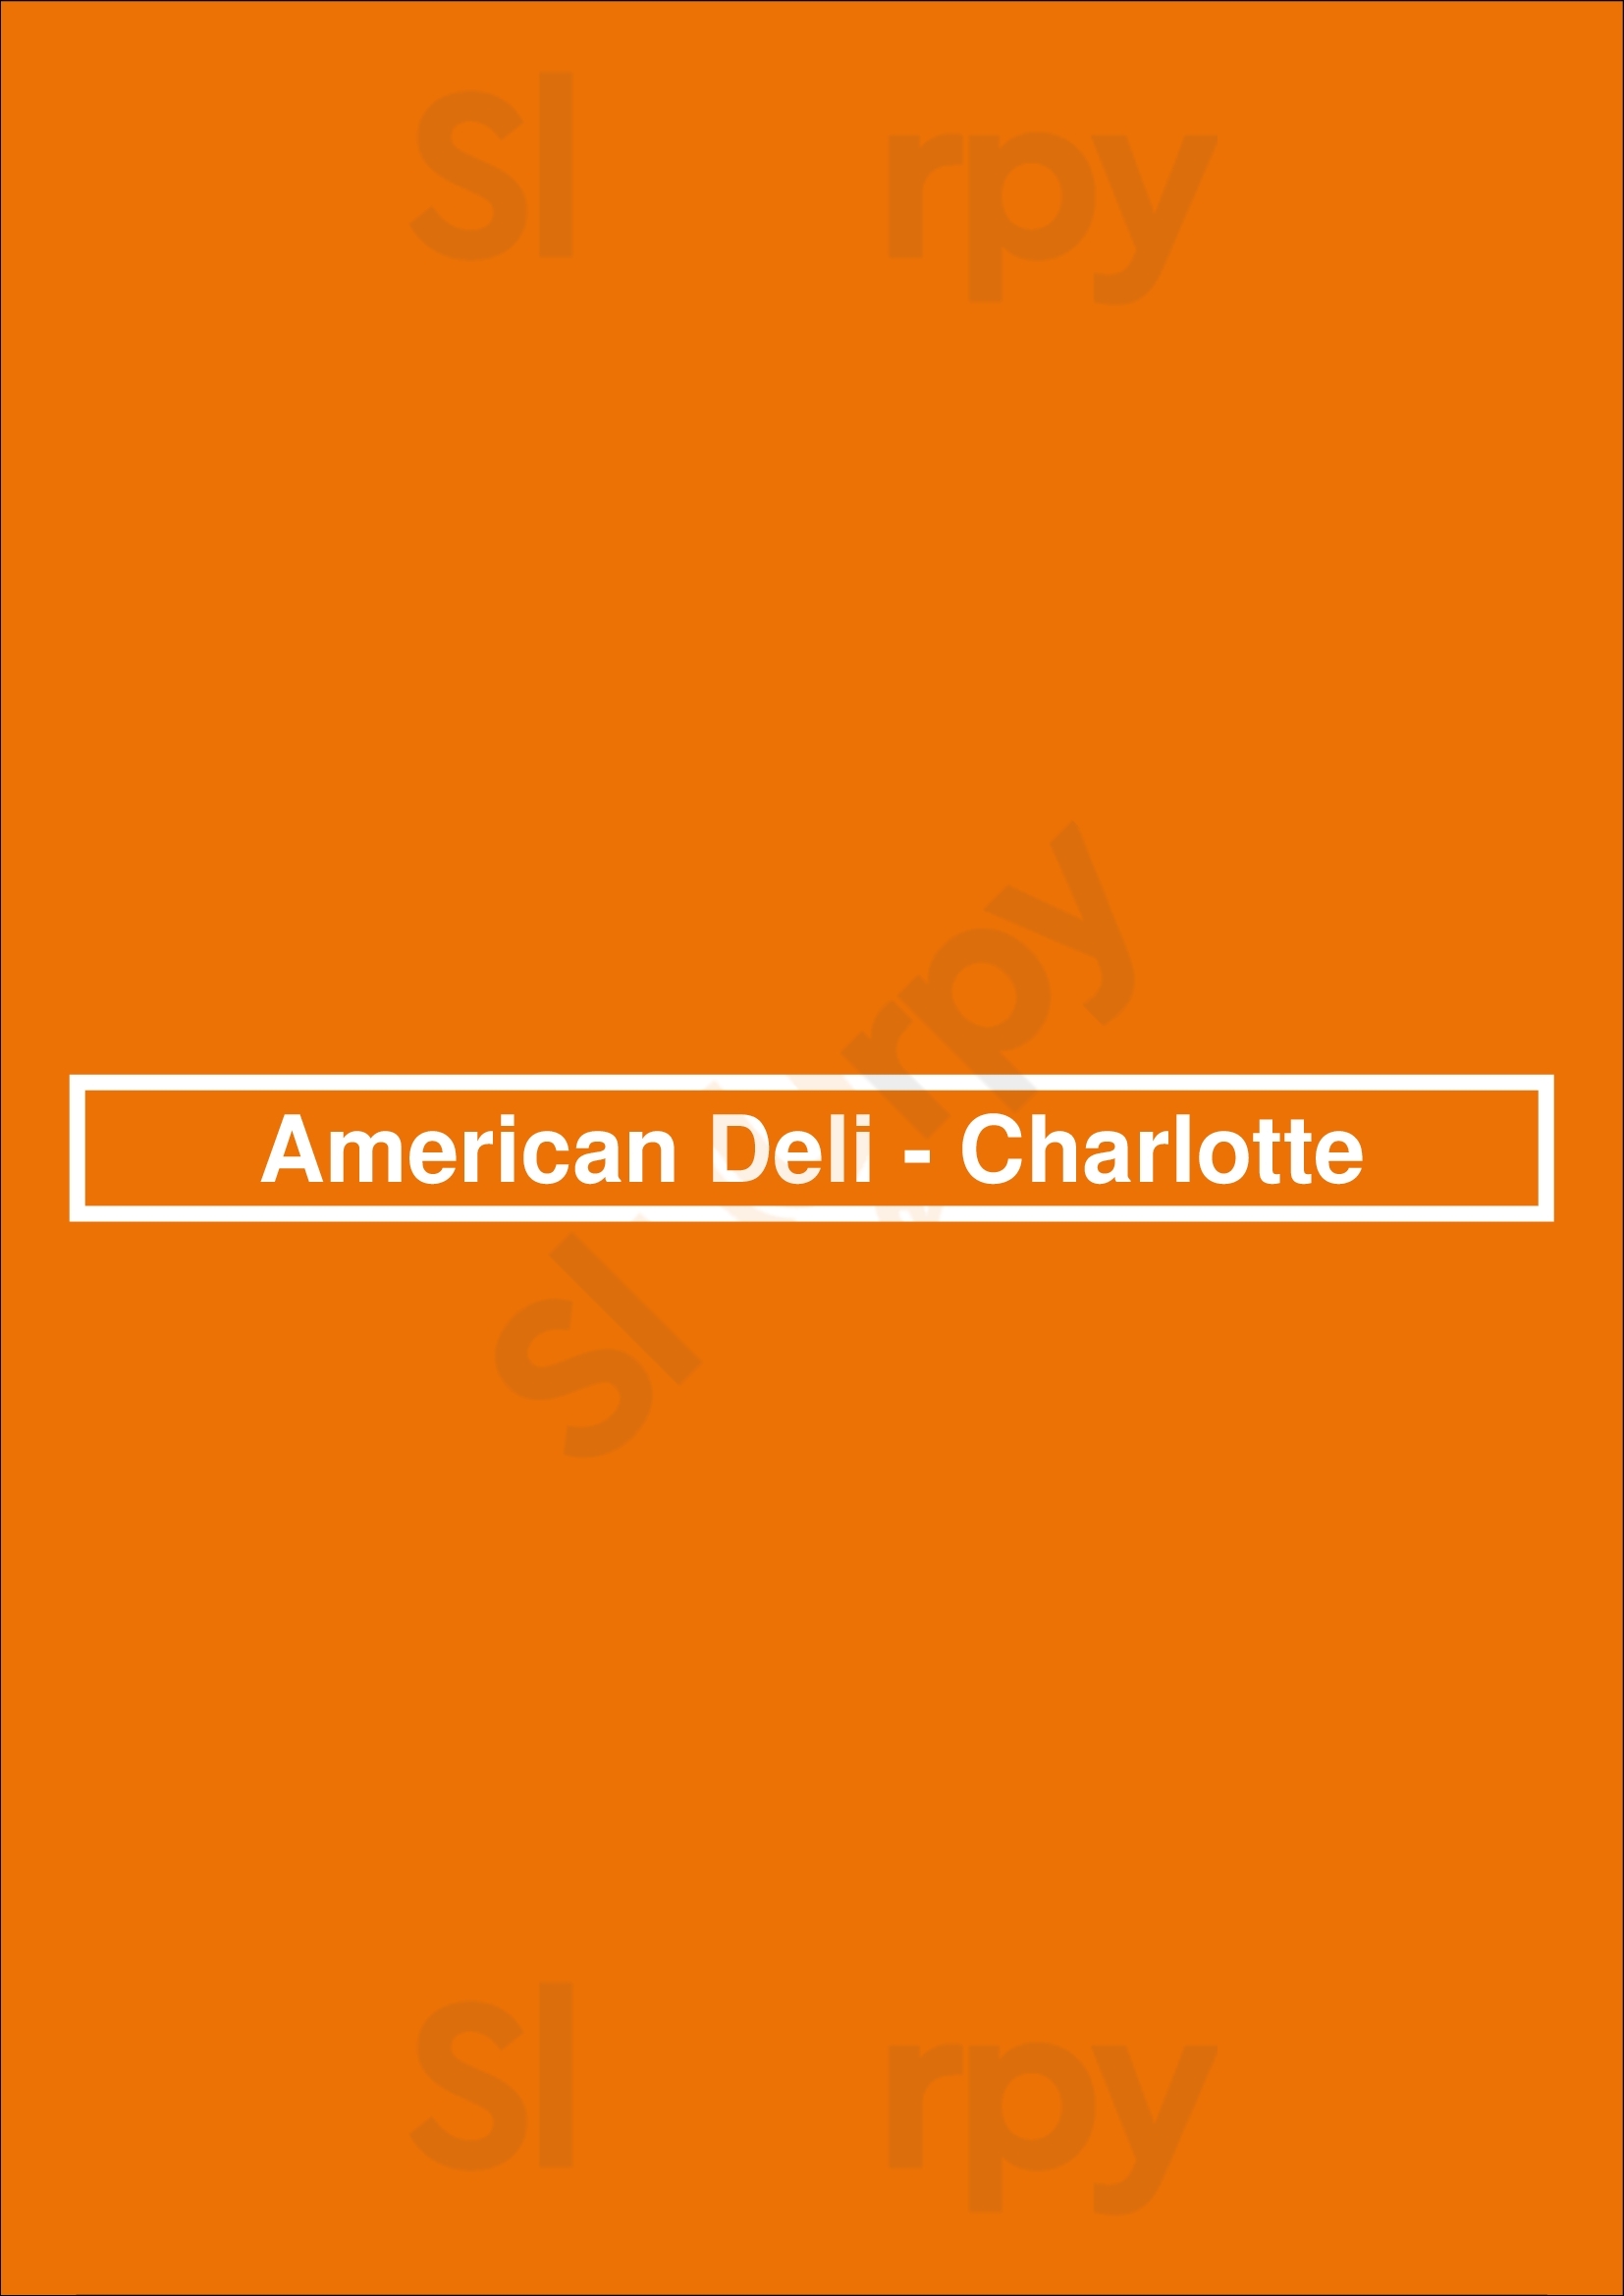 American Deli Charlotte Menu - 1